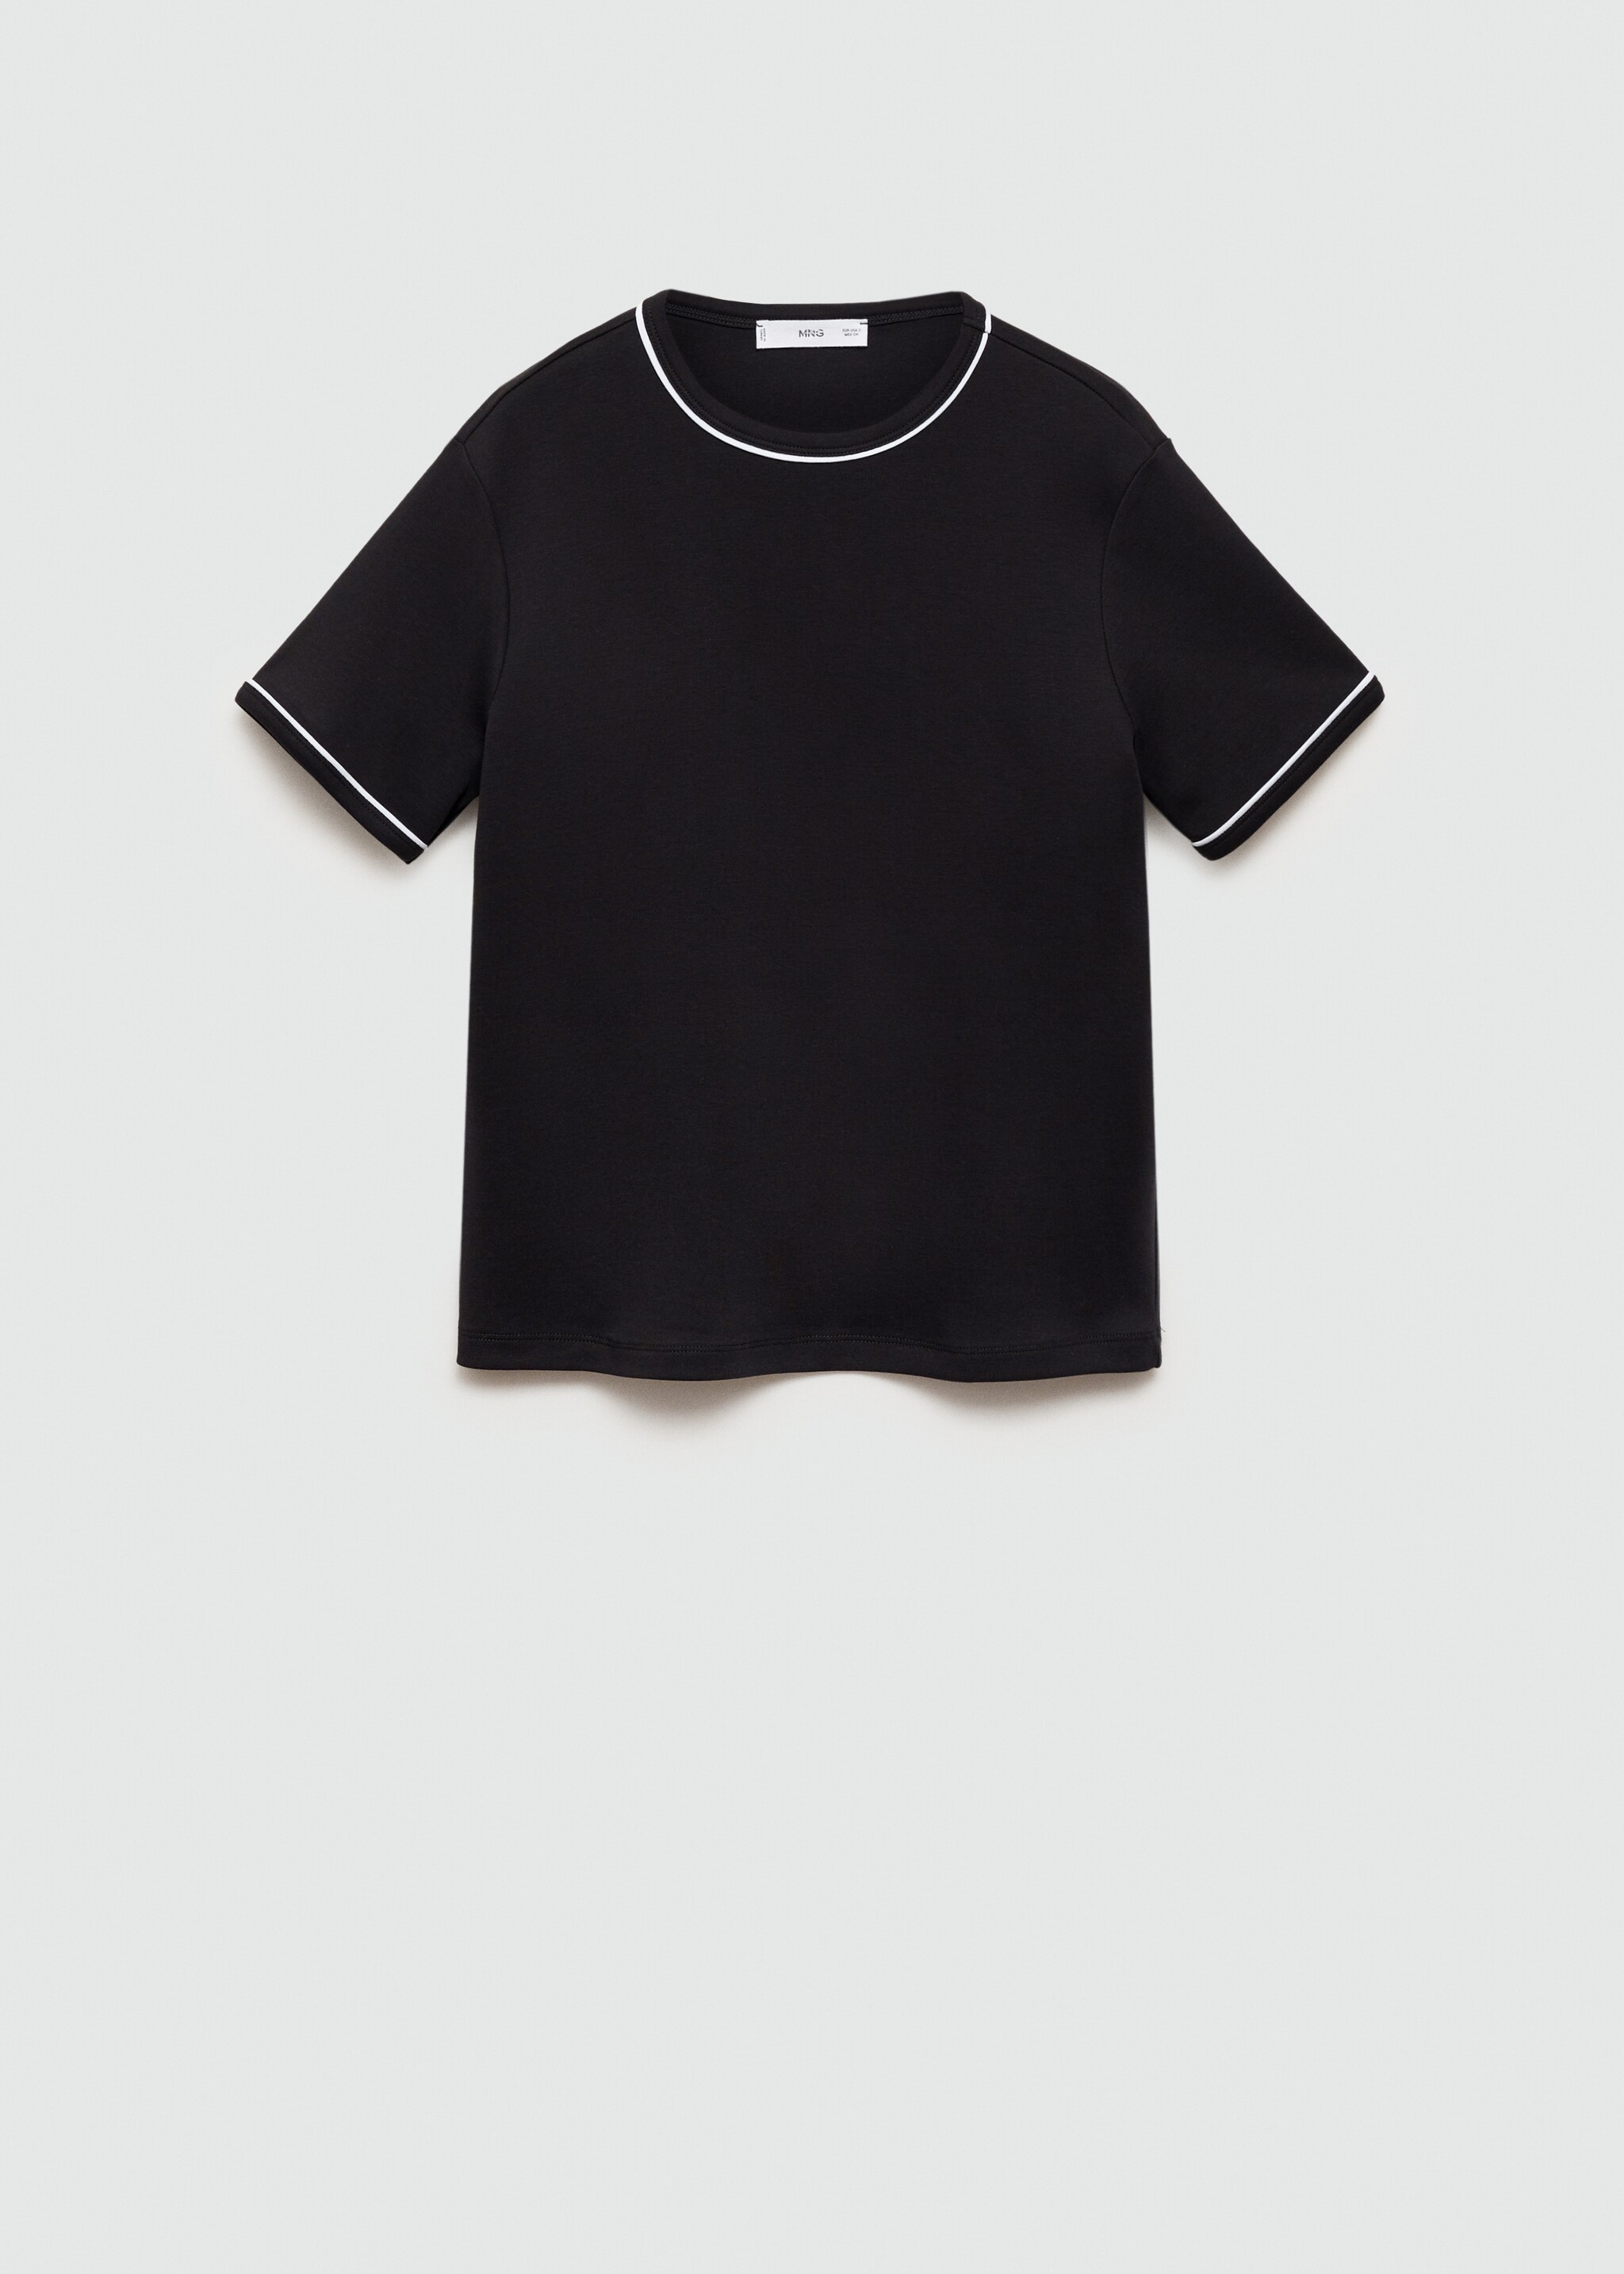 Camiseta 100% algodón ribetes contraste - Artículo sin modelo